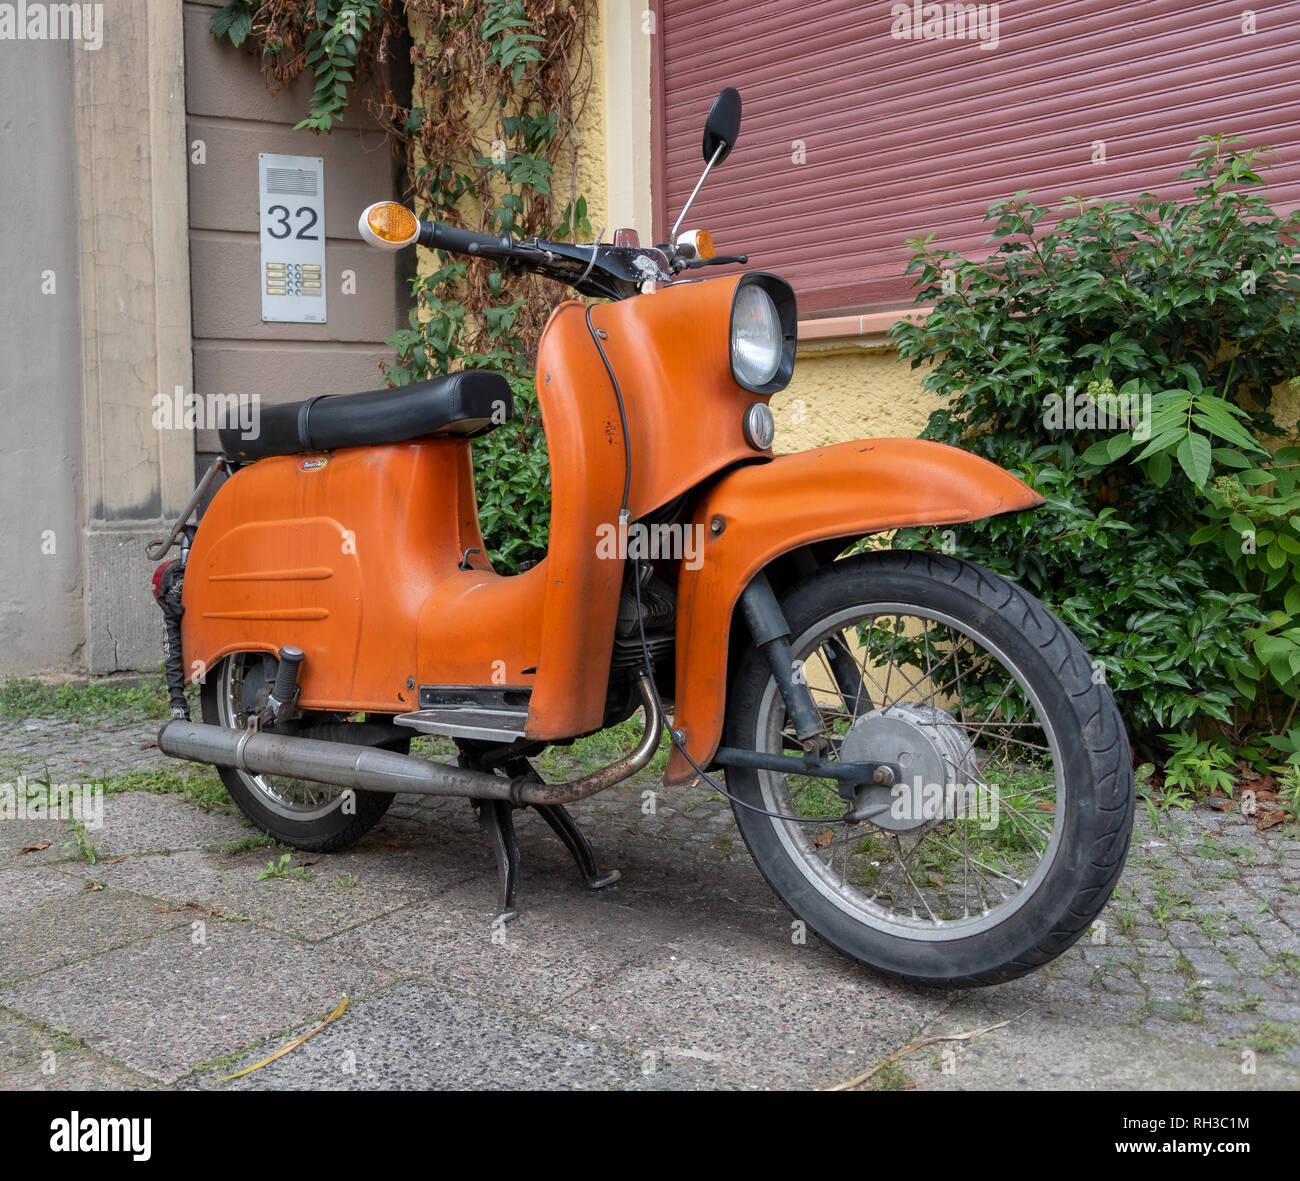 Berlin, Deutschland, Original orange Simson Schwalbe Motorroller in der  Gasse geparkt Stockfotografie - Alamy